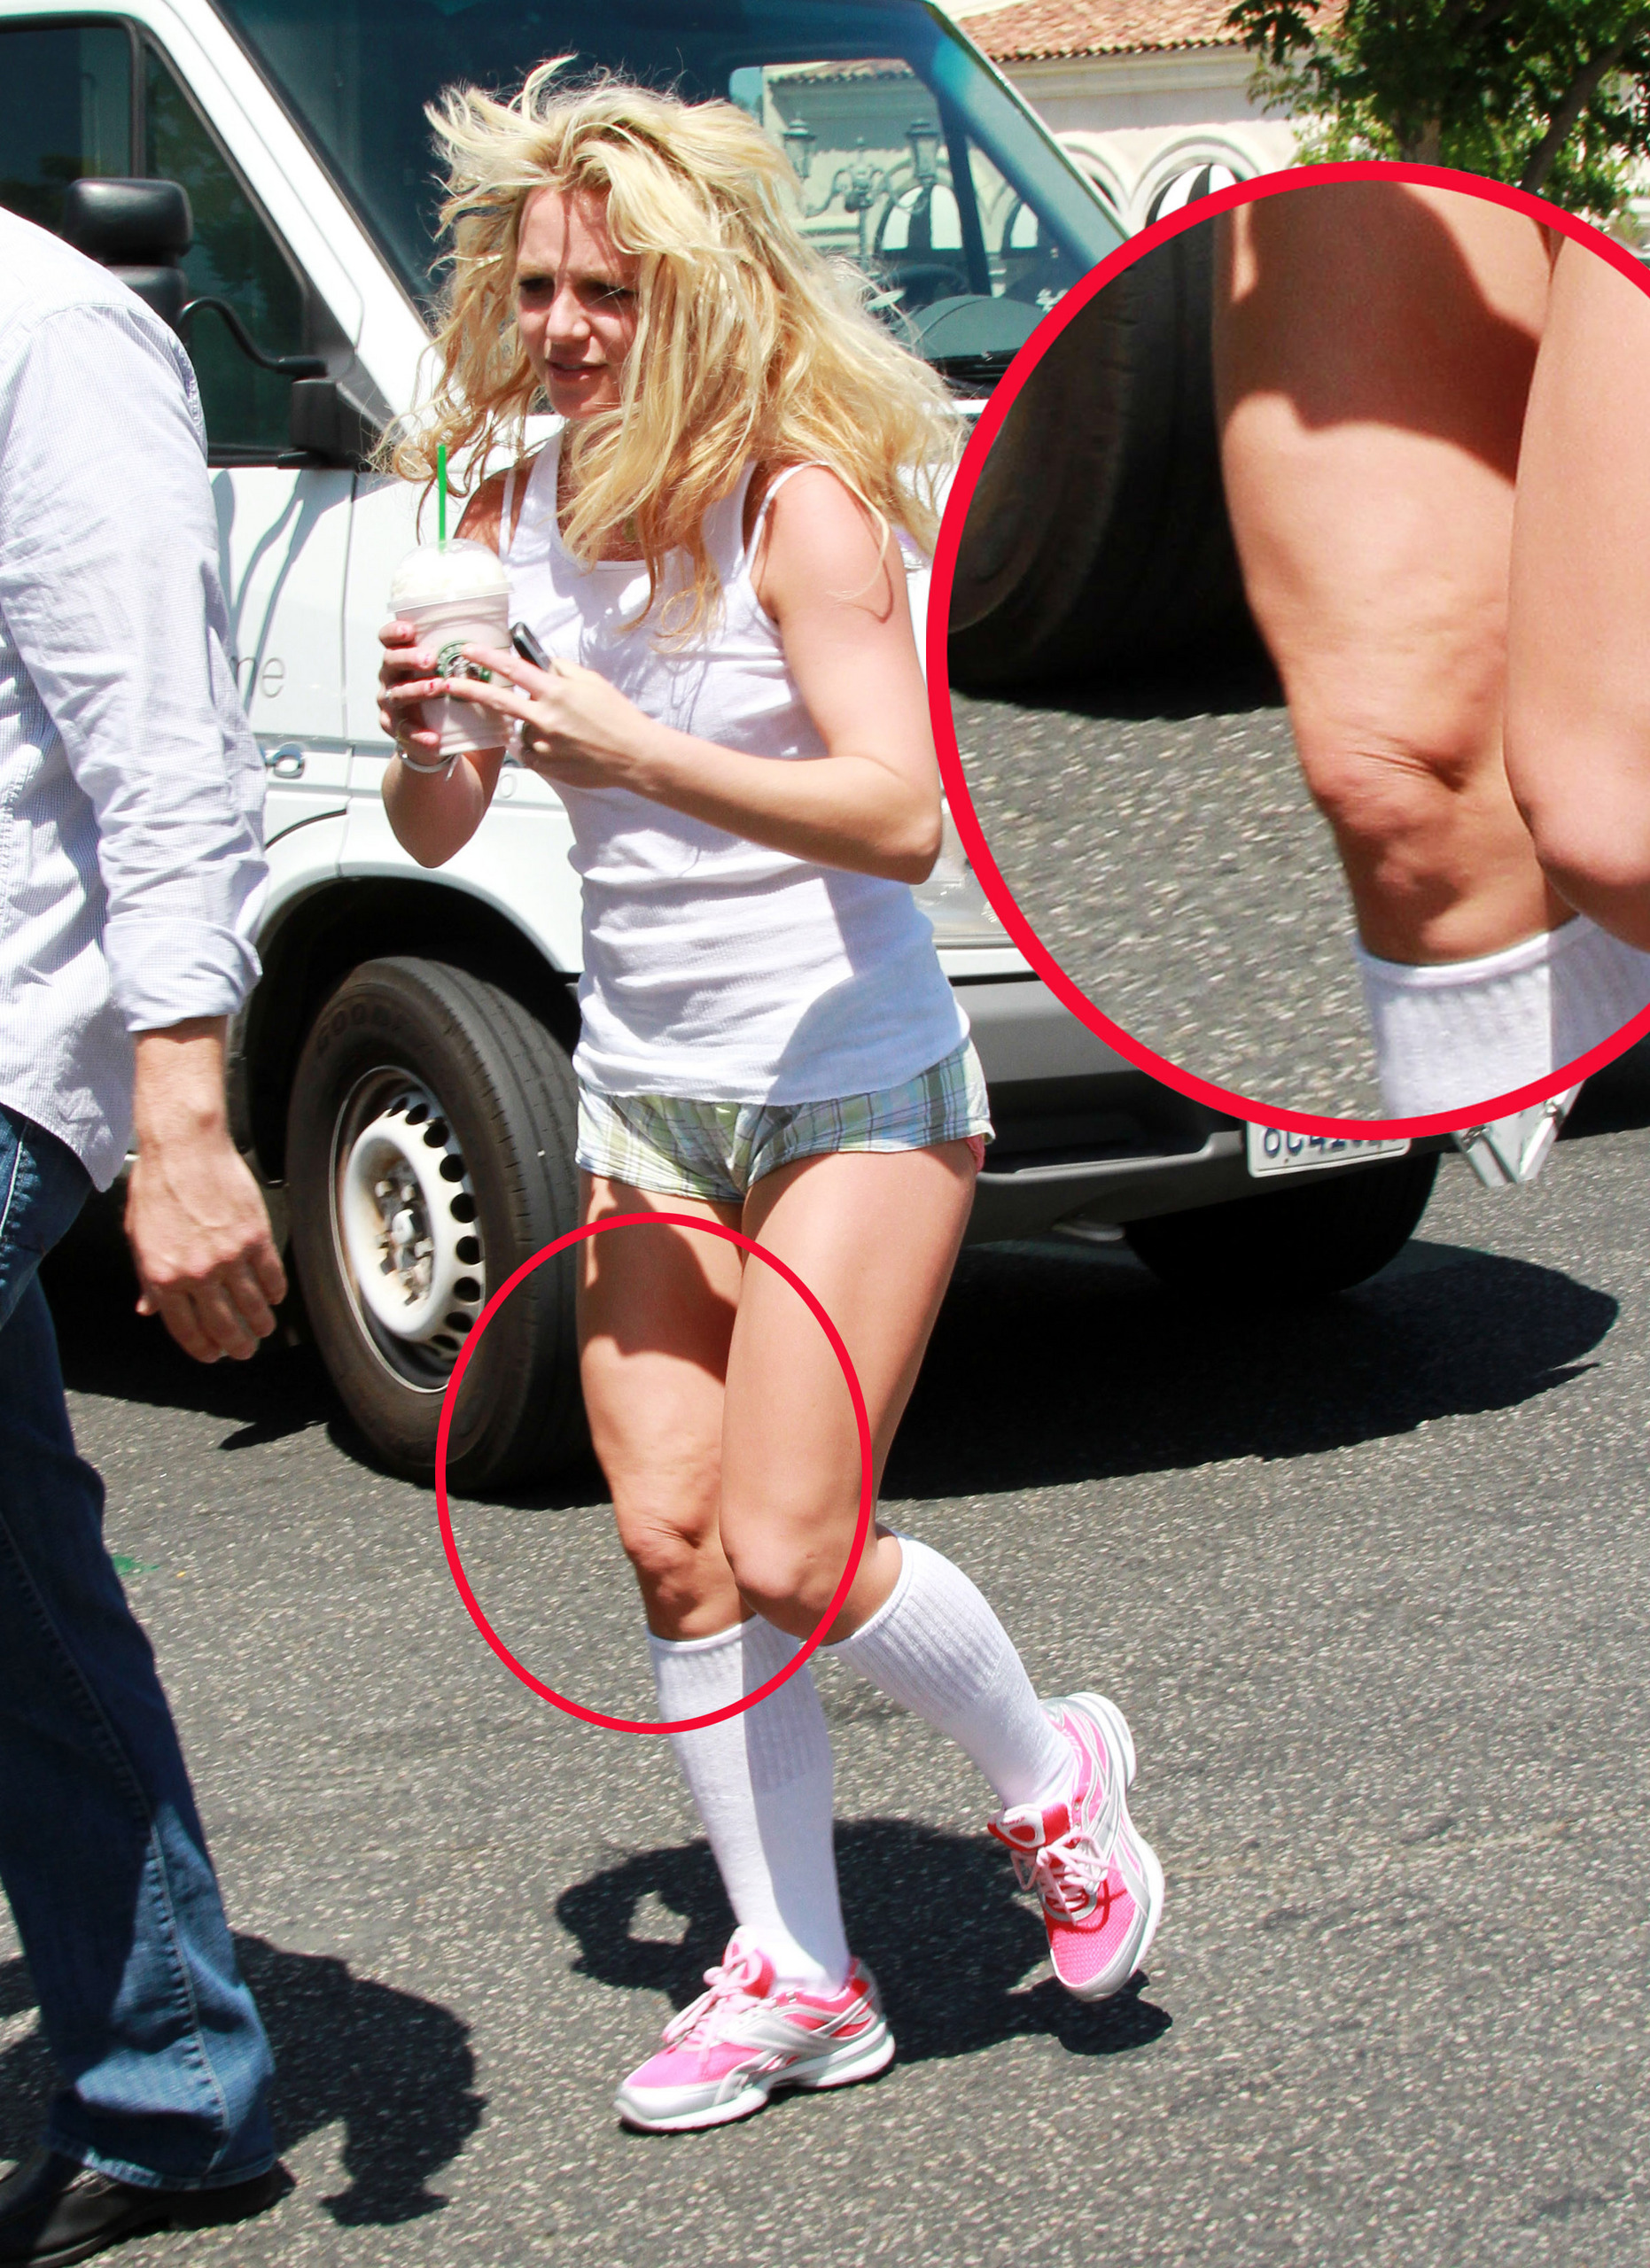 Britney spears suffers slip wardrobe